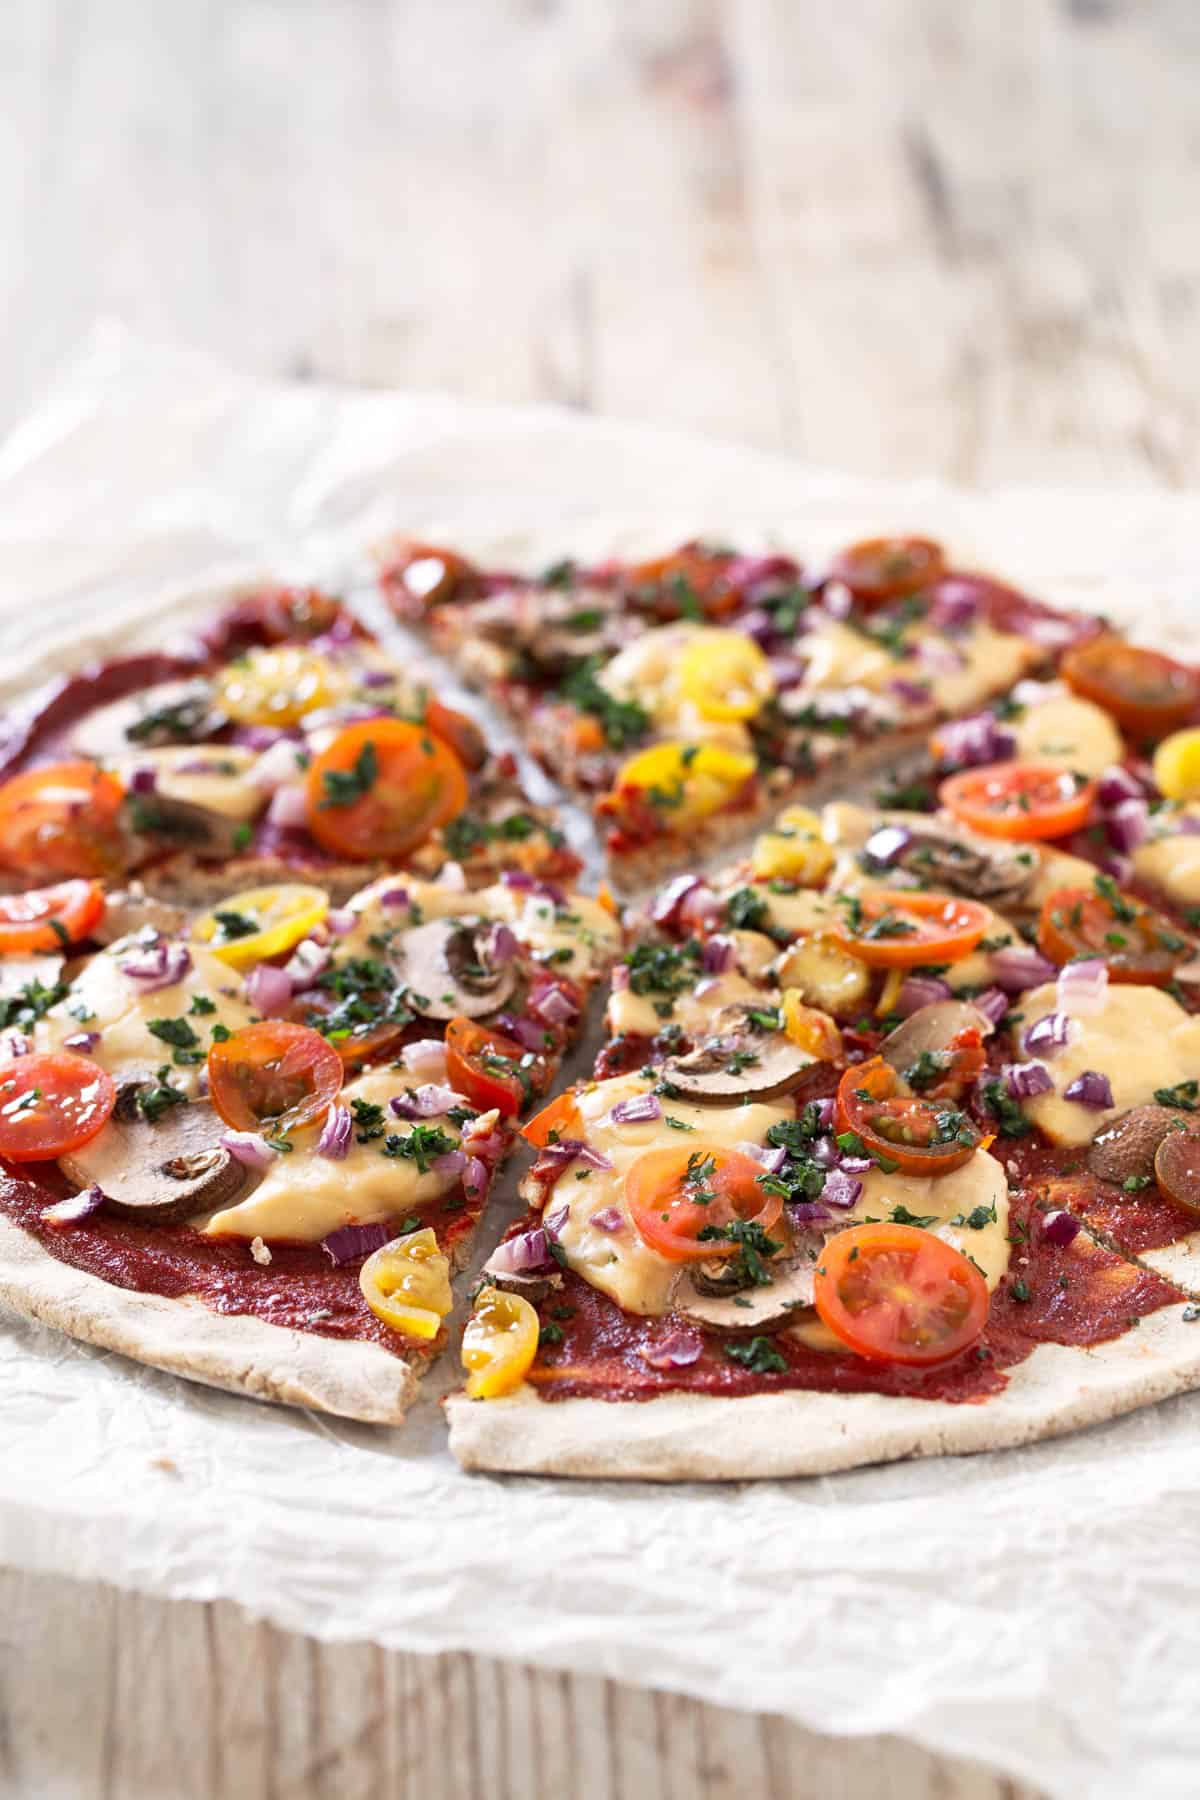 Pizza Vegana Sin Gluten.- Esta pizza es vegana, sin gluten, baja en grasa y 100% casera. Es muy fácil de preparar y podéis añadir vuestras verduras e ingredientes preferidos.